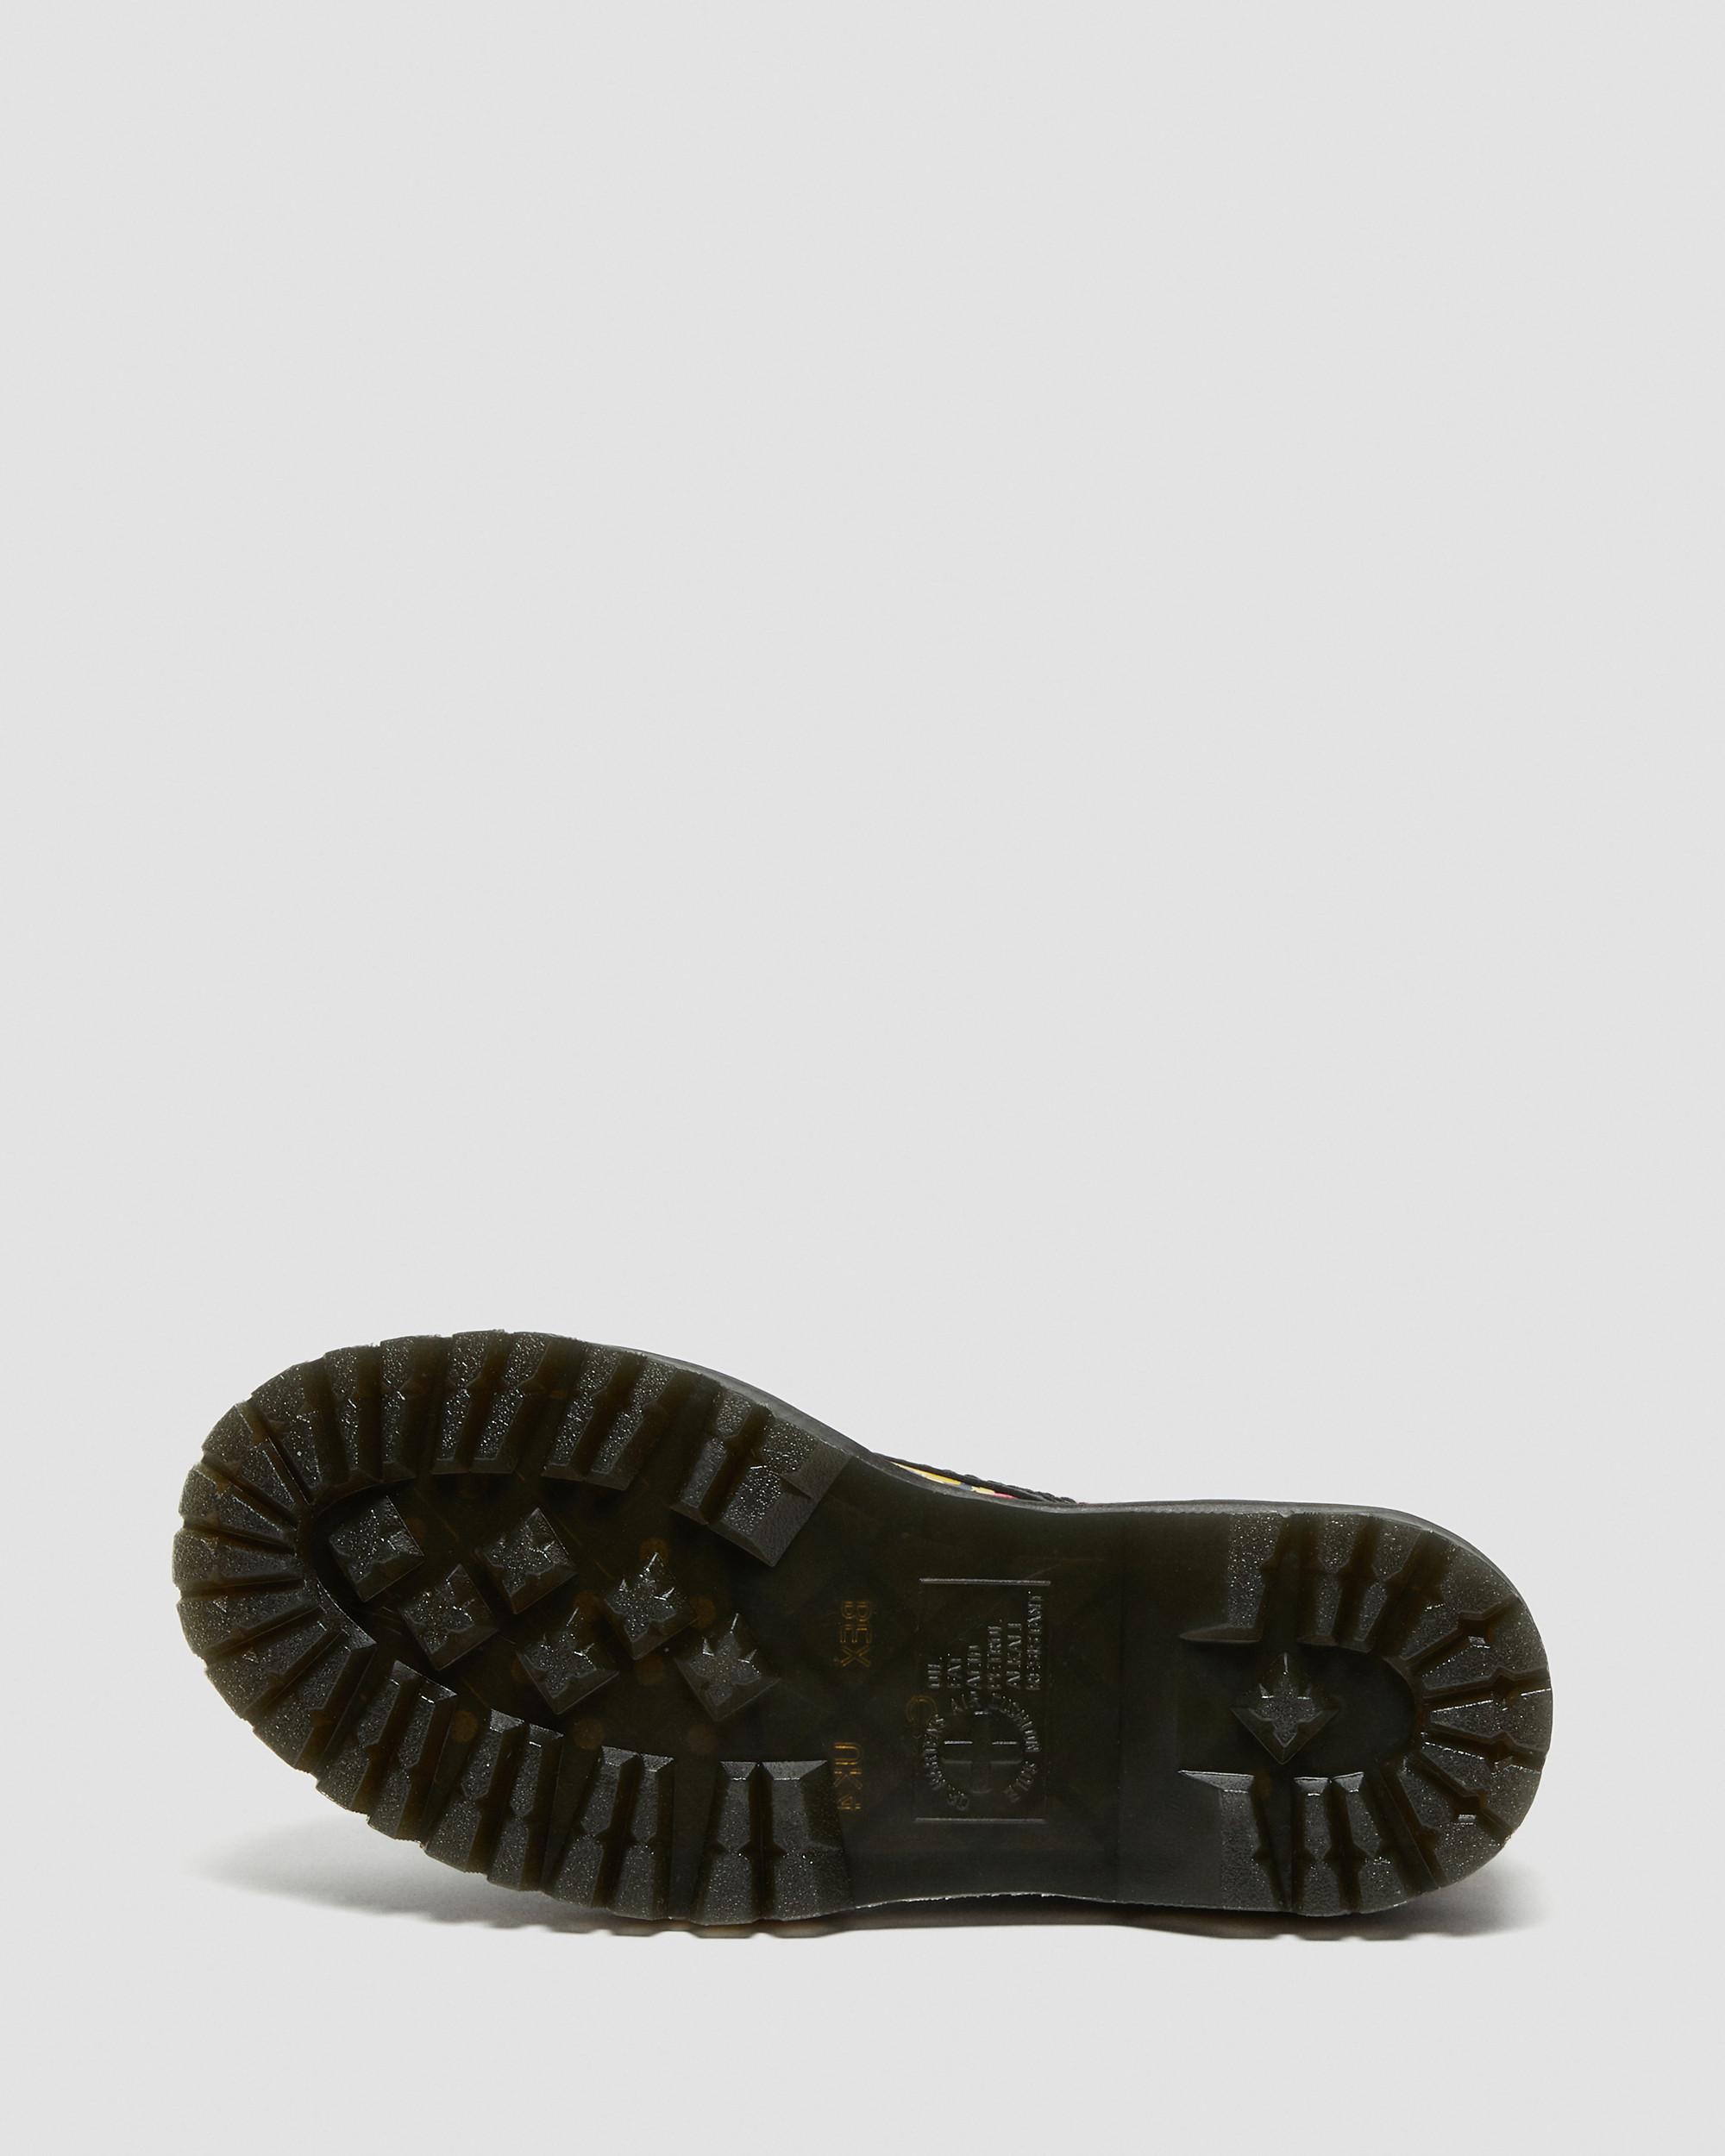 Sinclair Floral Mash | Leather Boots in Dr. Black Martens Up Platform